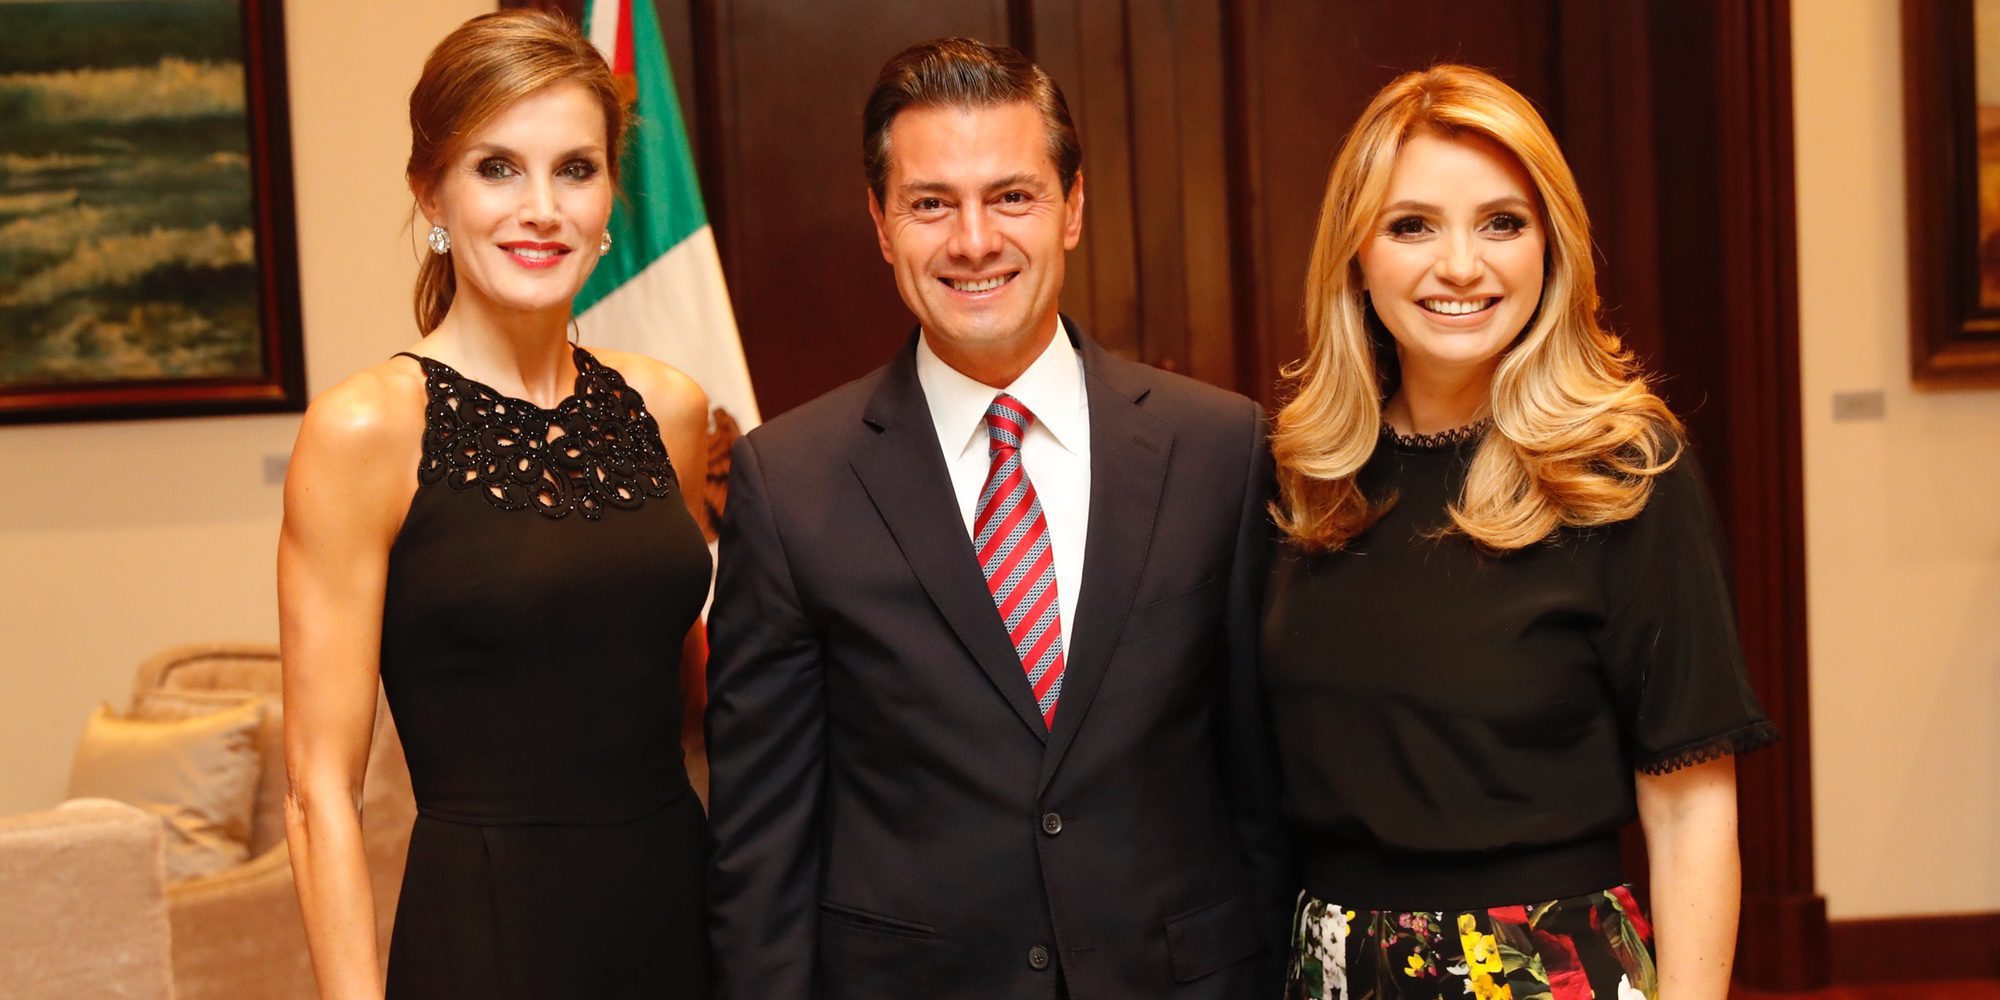 La Reina Letizia une sus fuerzas con Peña Nieto y Angélica Rivera contra el cáncer en su visita a México